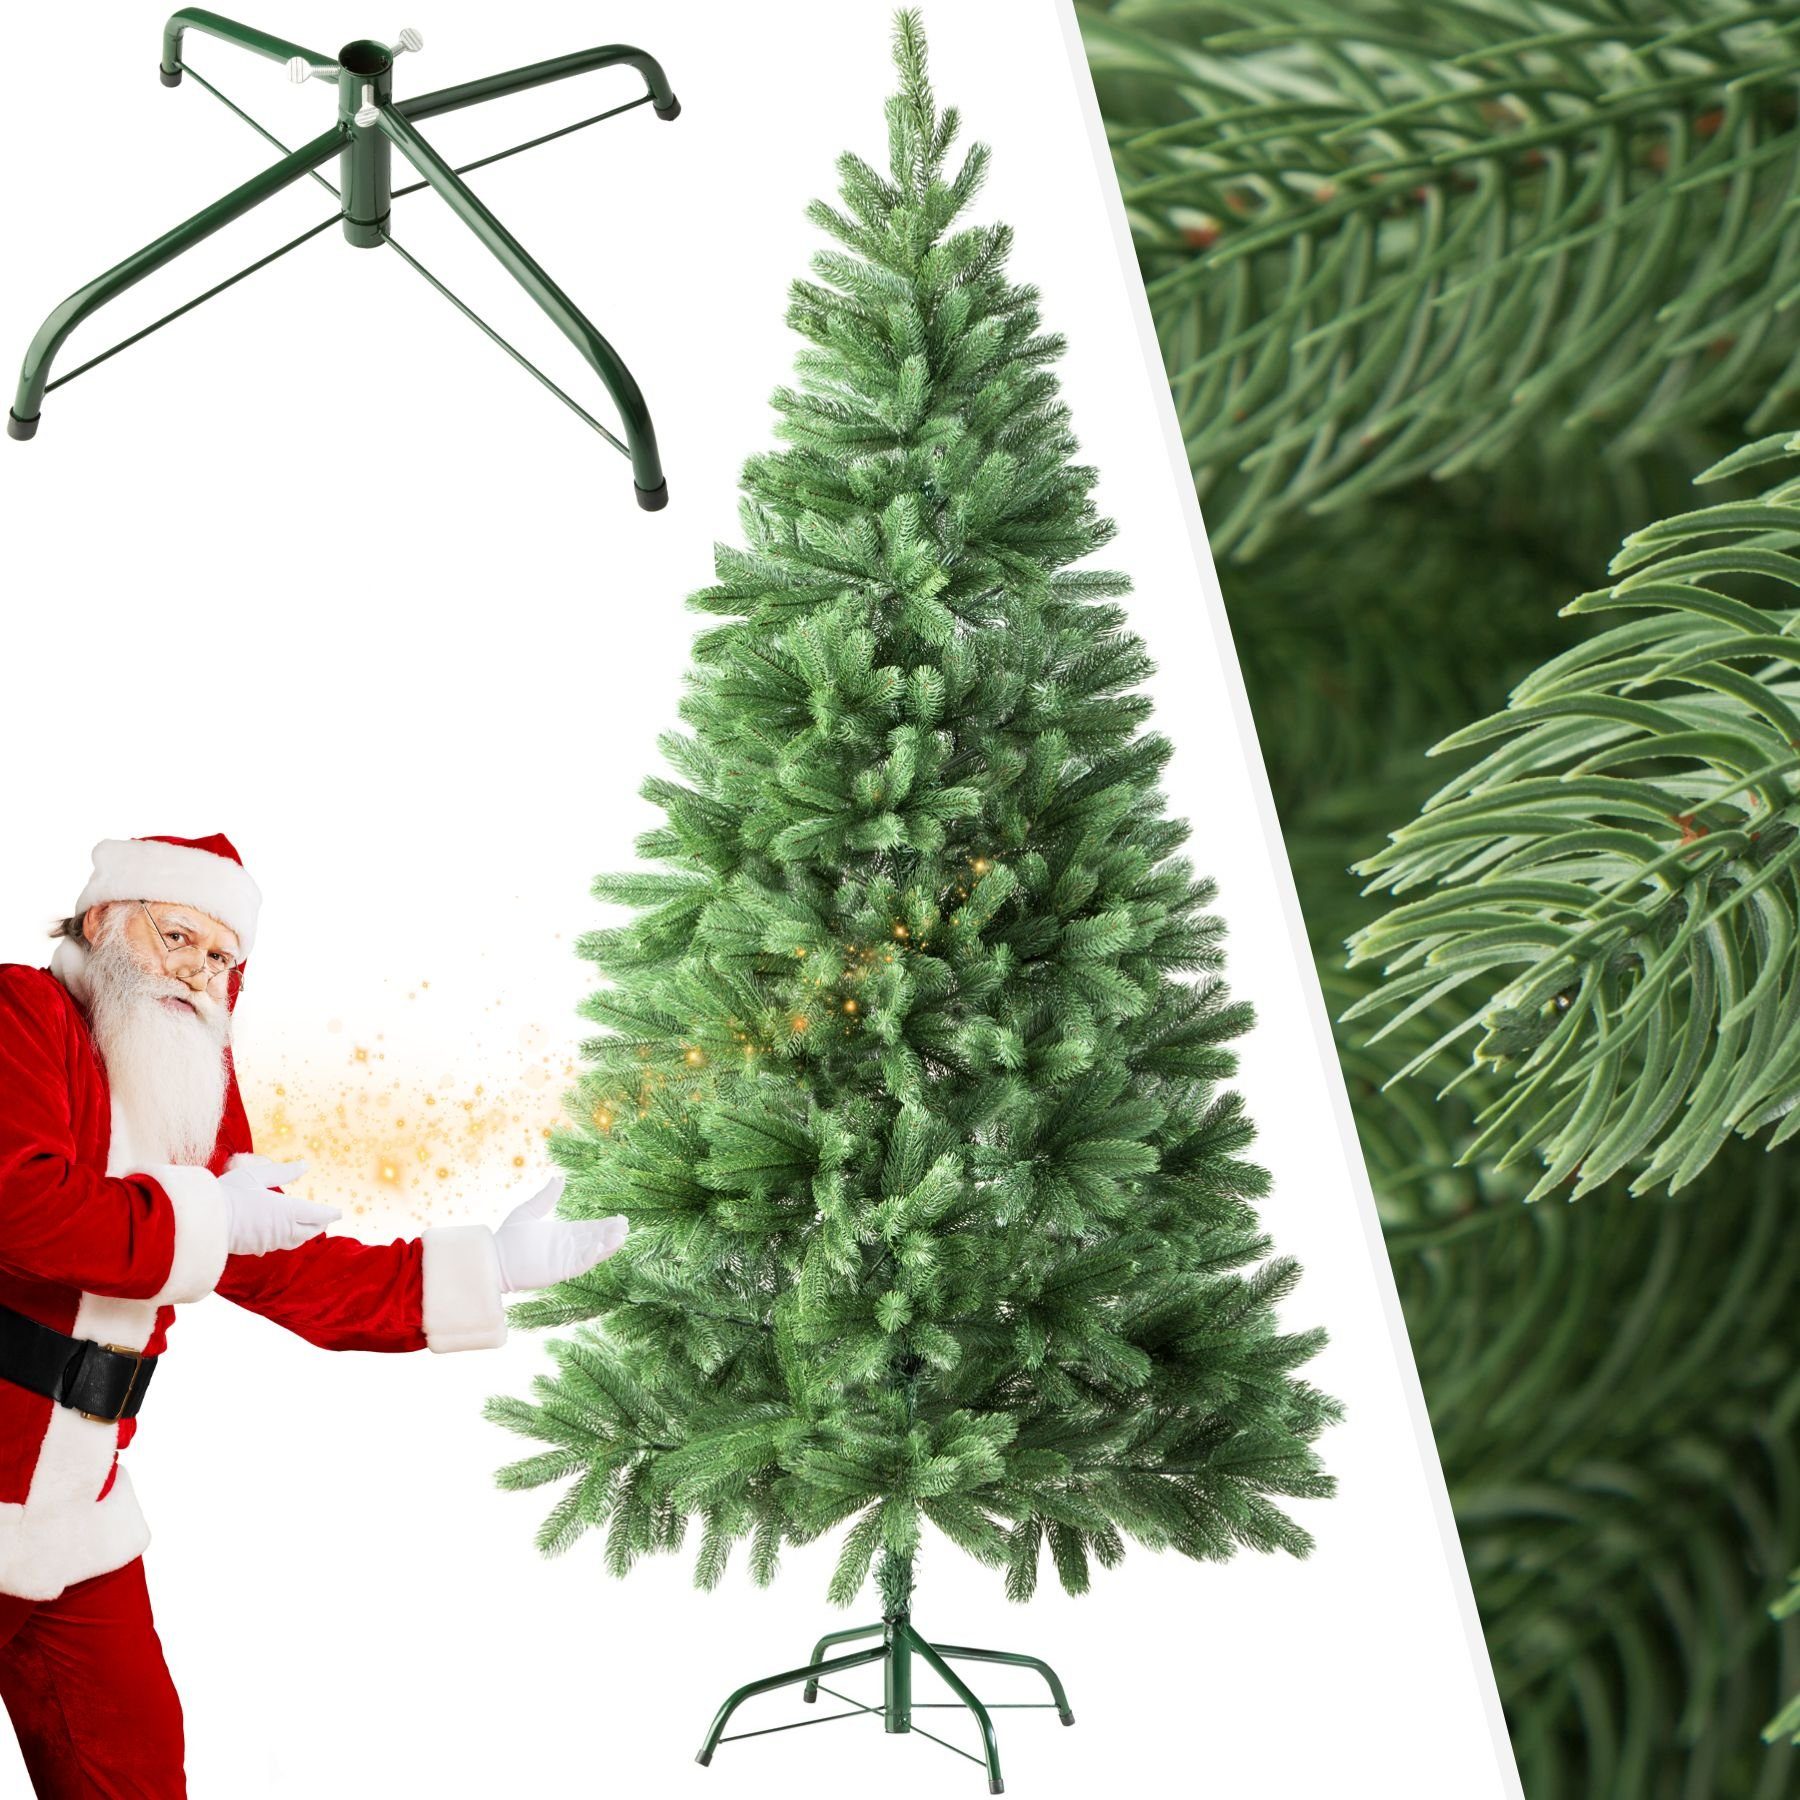 tectake Künstlicher Metallständer, 742 mit künstlich Spitzen grün, Undekorierter/Unbeleuchteter Weihnachtsbaum Baum Weihnachtsbaum